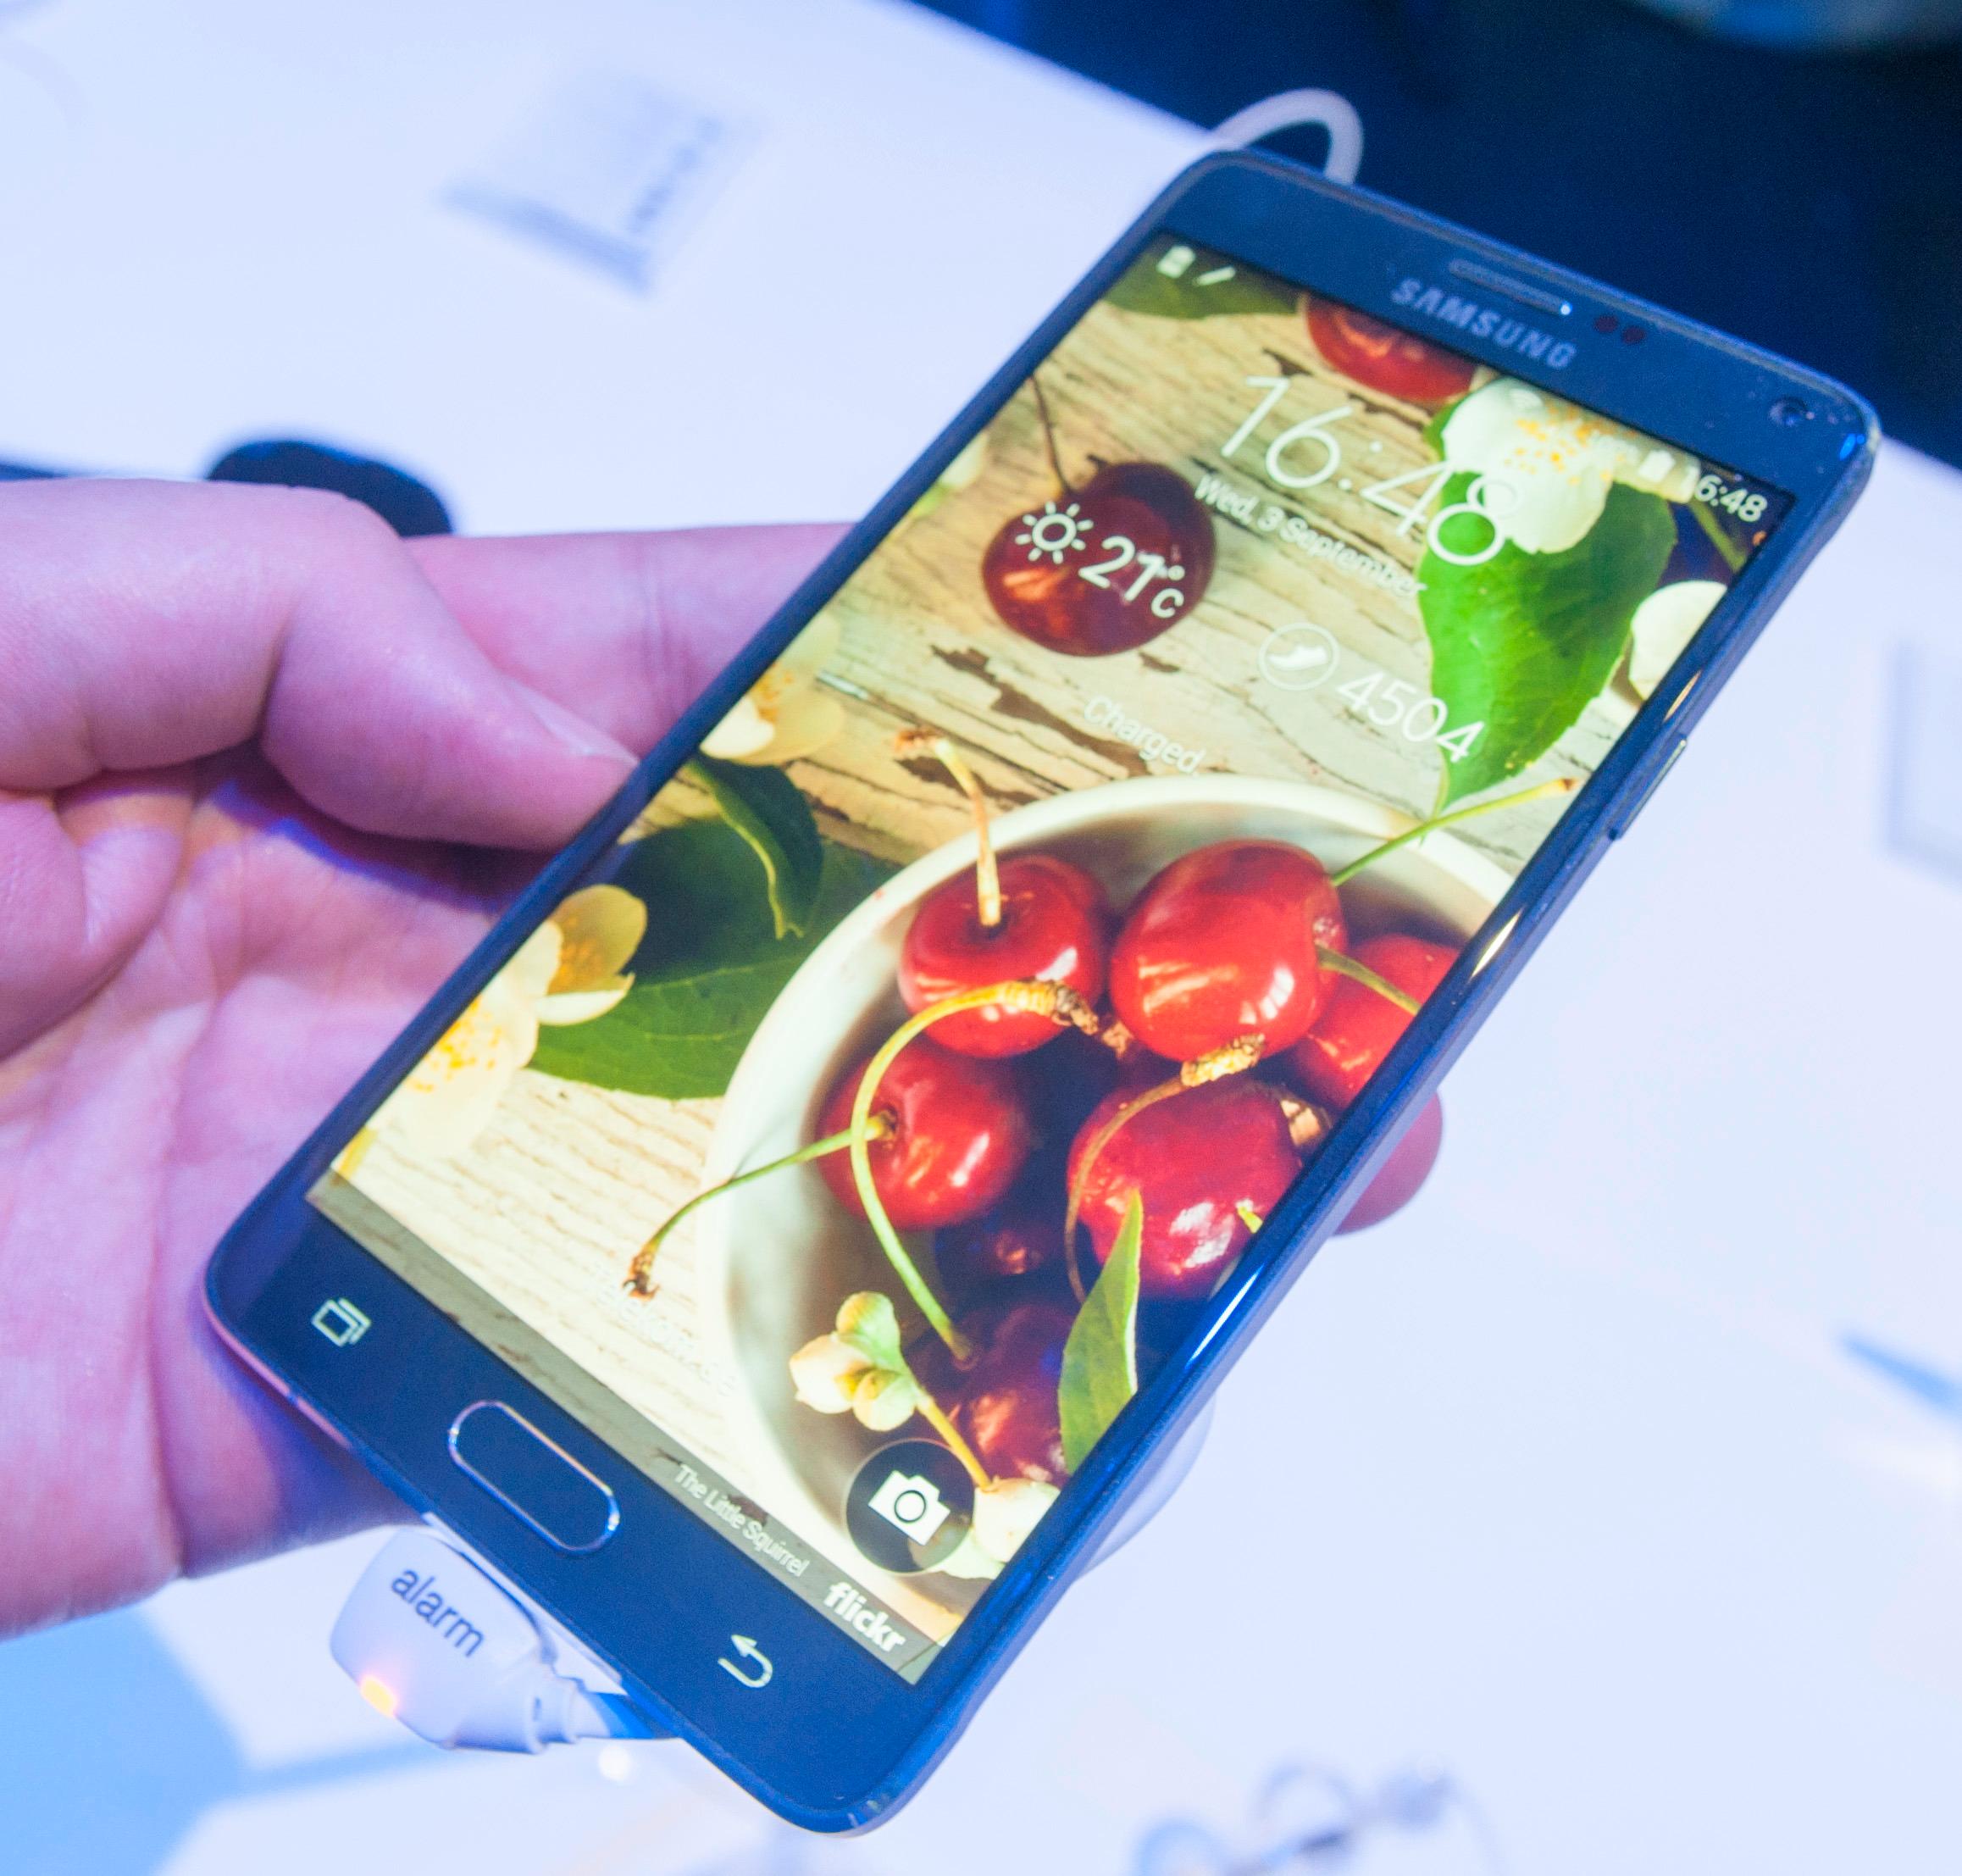 Den flotte skjermen er ett av mange høydepunkt ved Galaxy Note 4. .Foto: Finn Jarle Kvalheim, Amobil.no